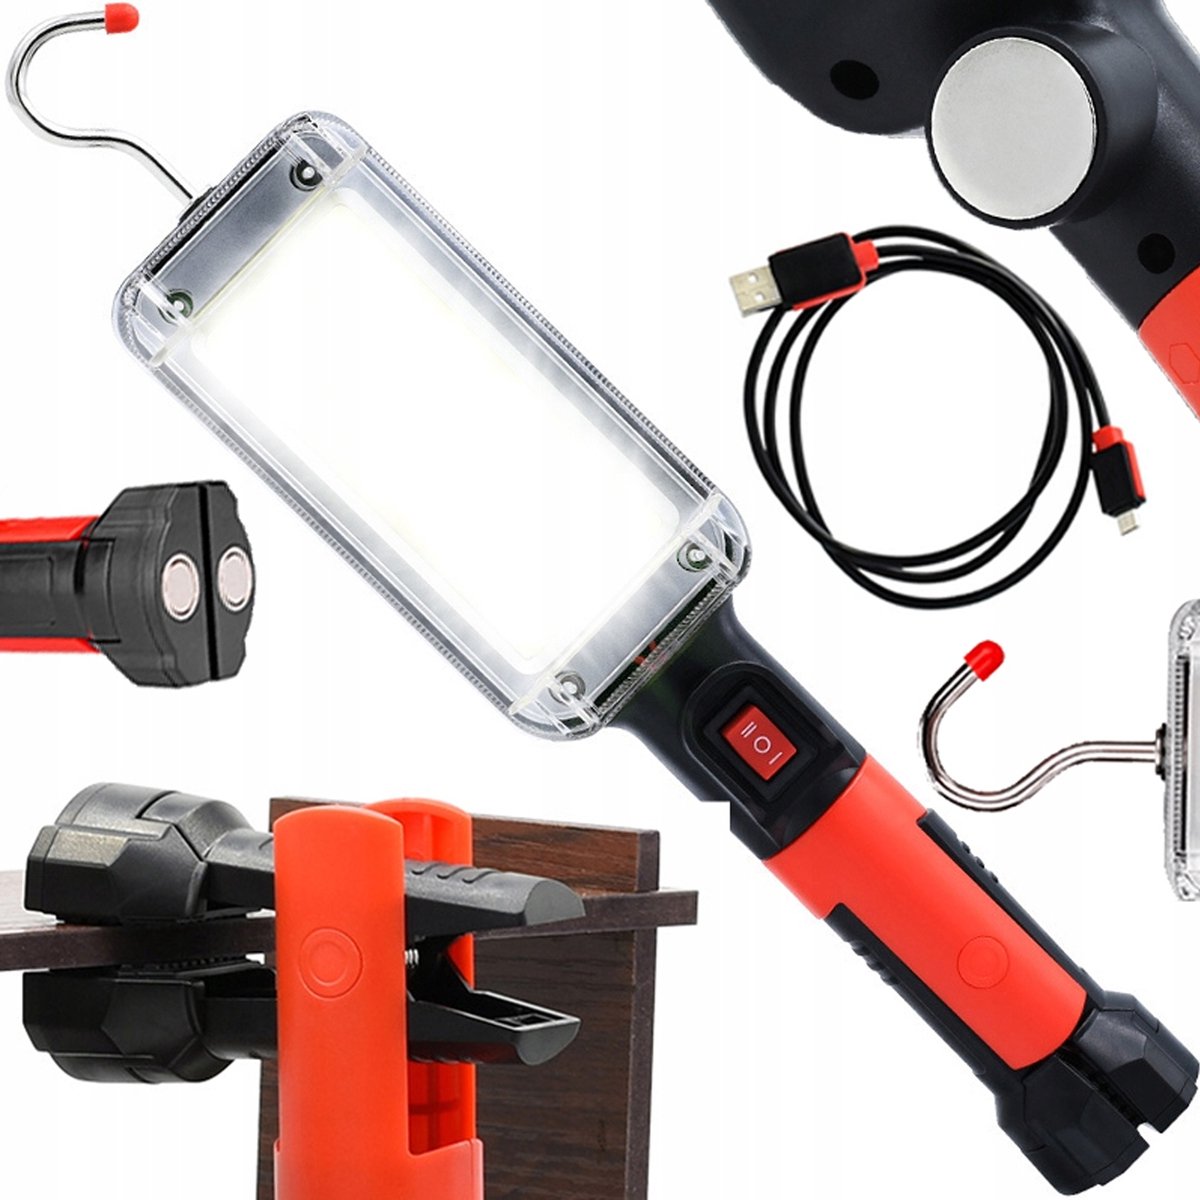 Werkplaatslamp - Werkplaats Verlichting - Looplamp - LED Lamp - Magnetisch - Klem & Haakje - USB Kabel - Ergonomisch - Rheme